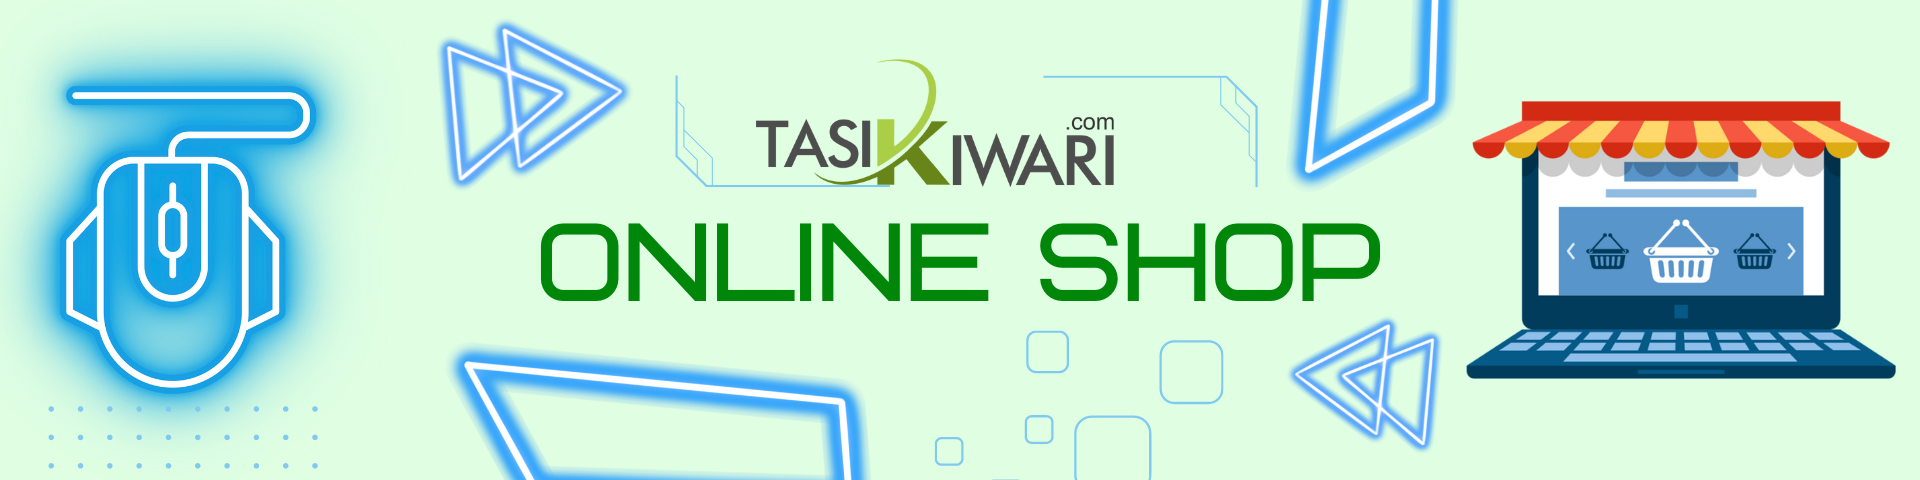 tasikwari online shop